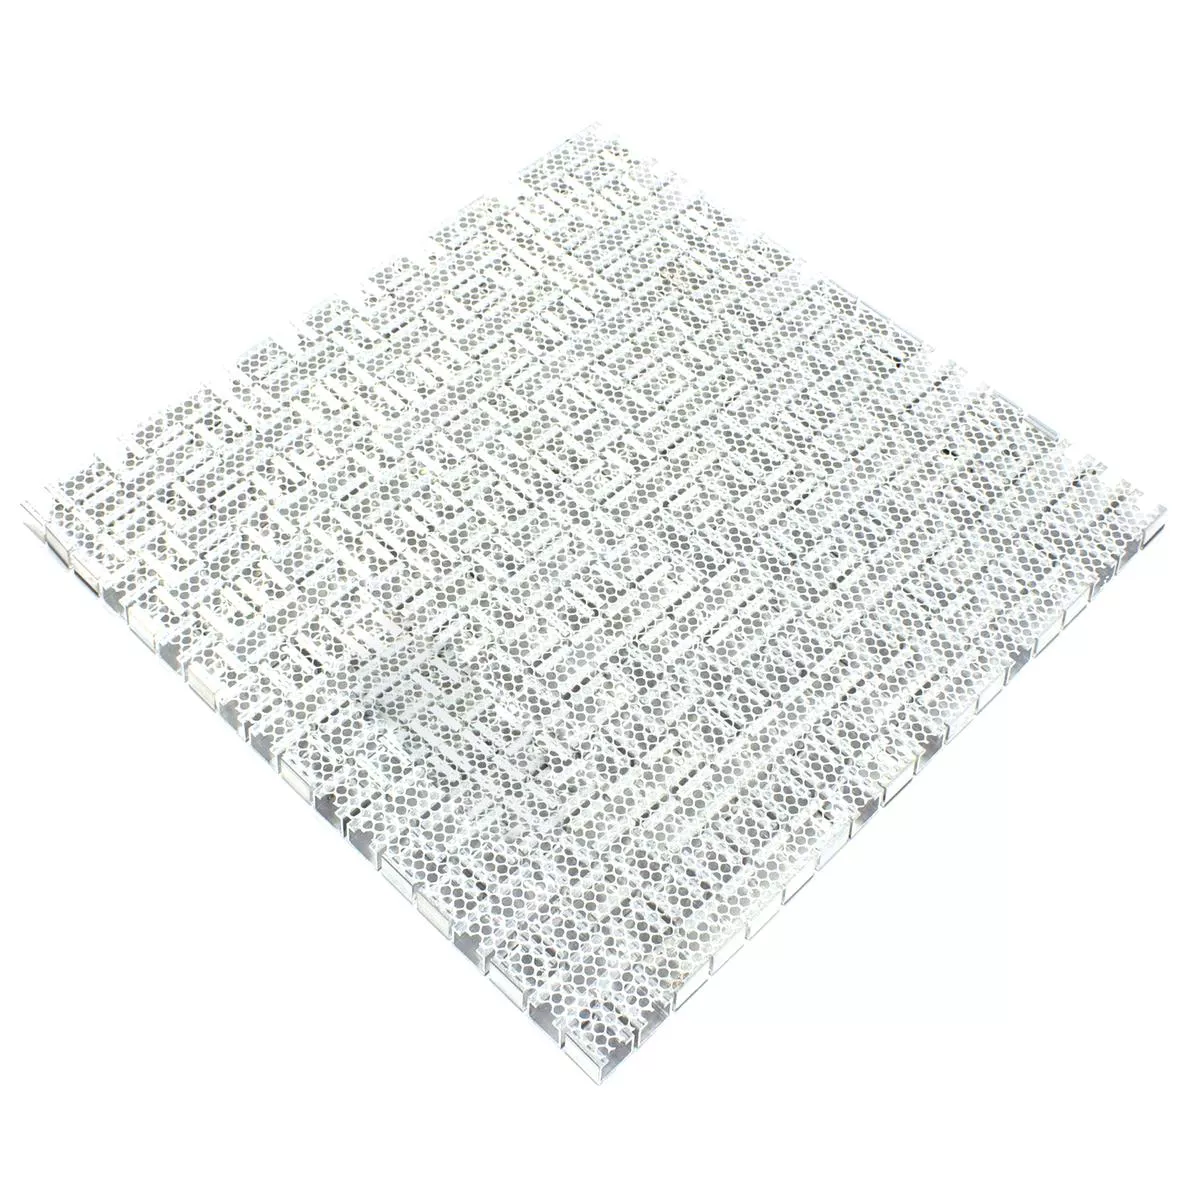 Muster von Aluminium Metall Mosaik Fliesen Montezuma Grau Silber Mix